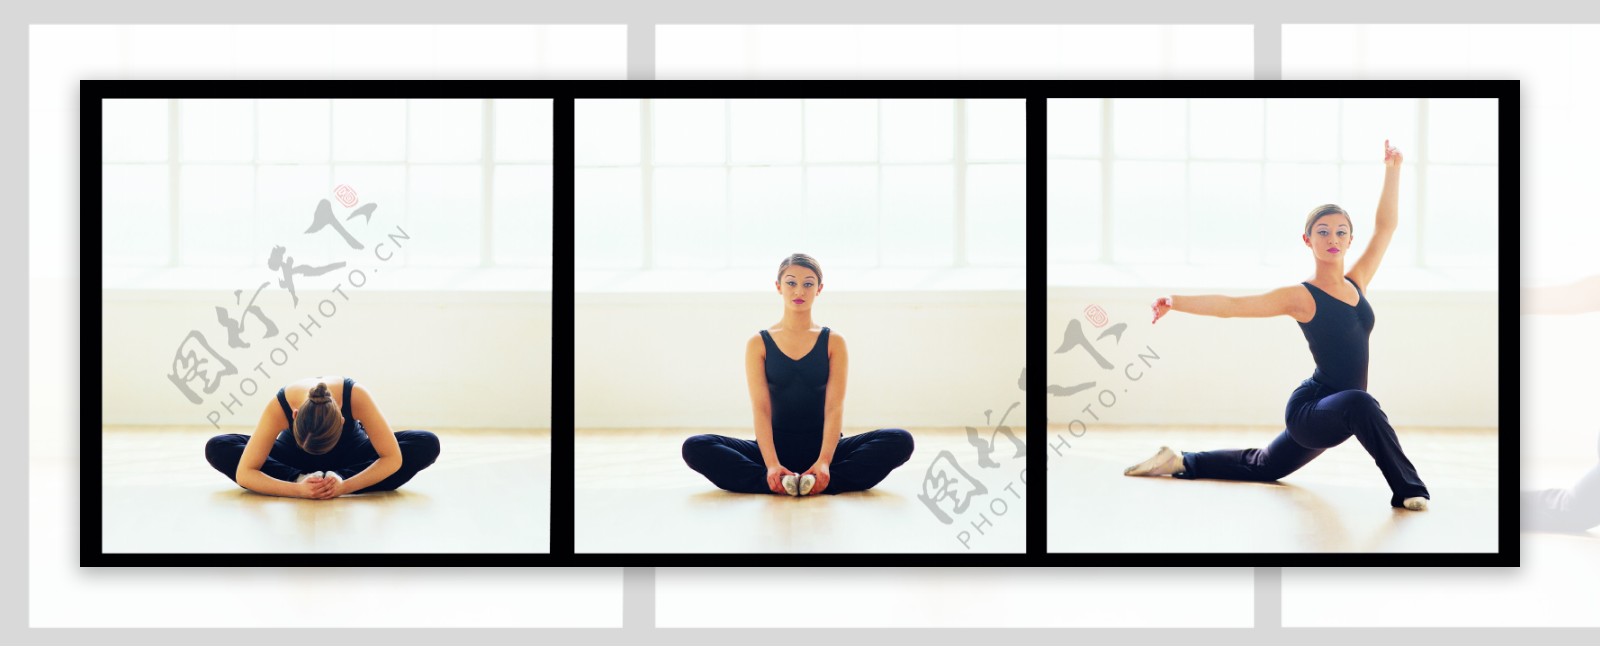 三张做瑜伽动作的美女图片